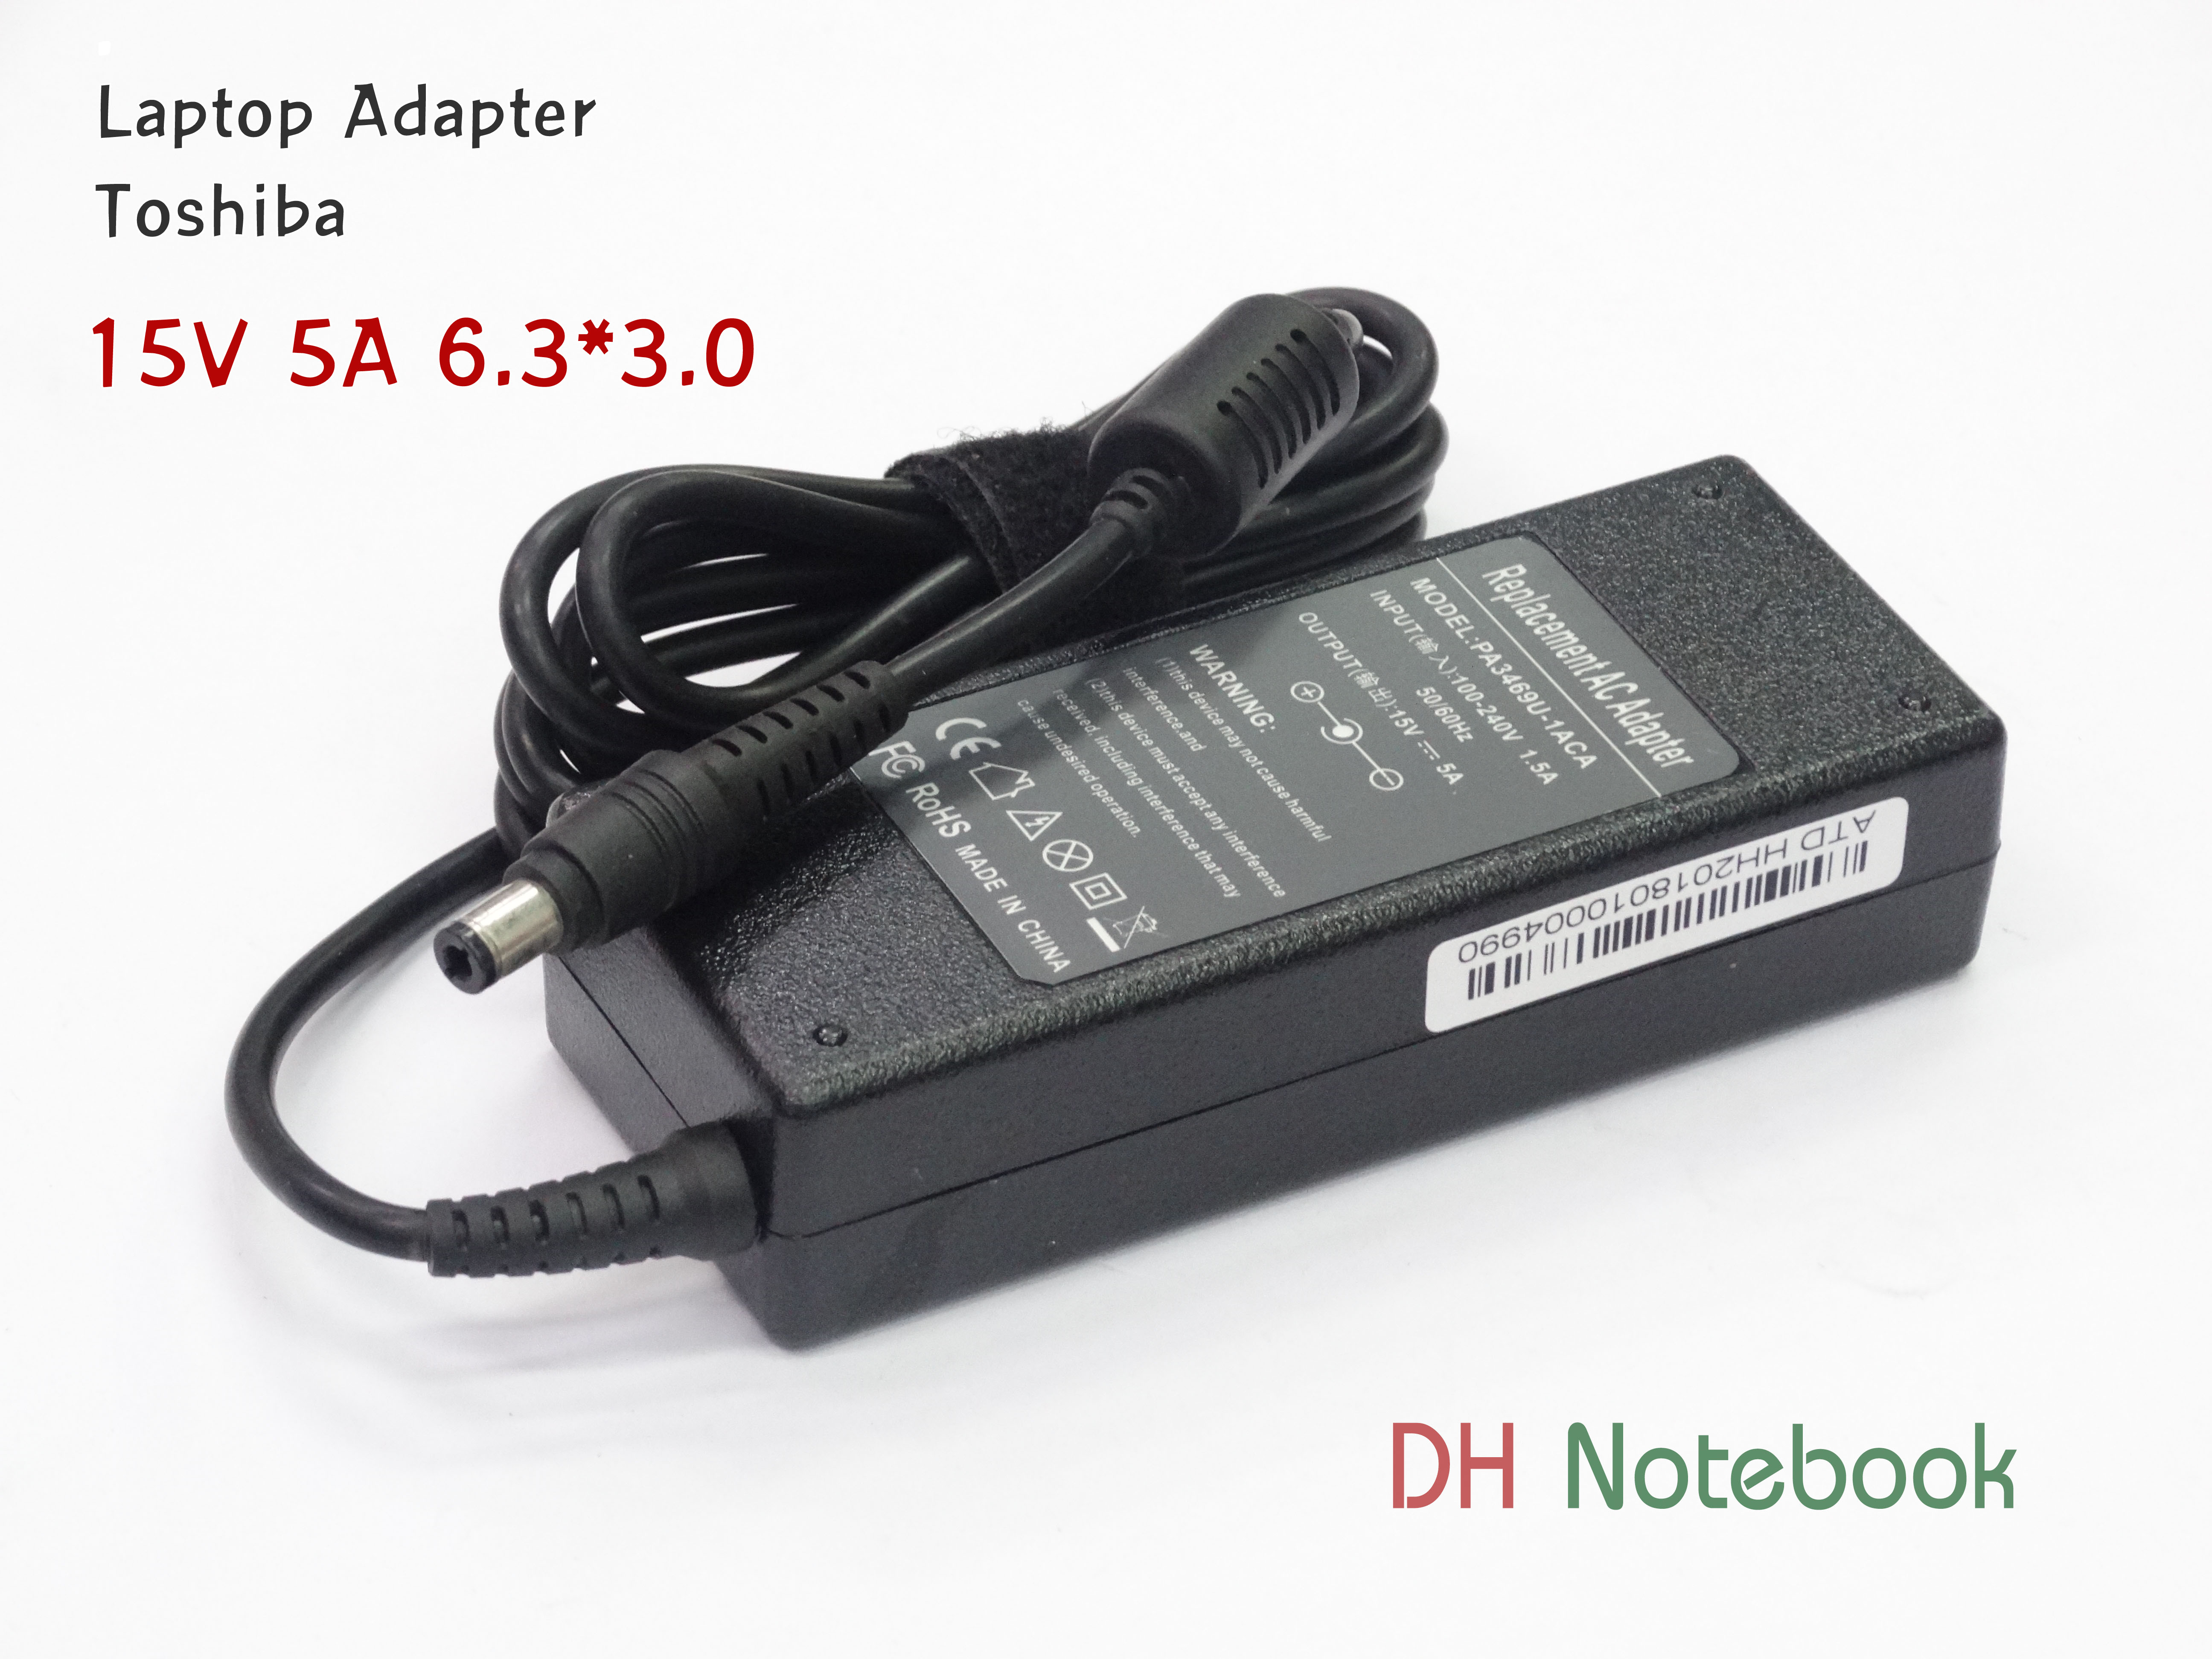 Adapter TOSHIBA 15V 5A (6.3*3.0)